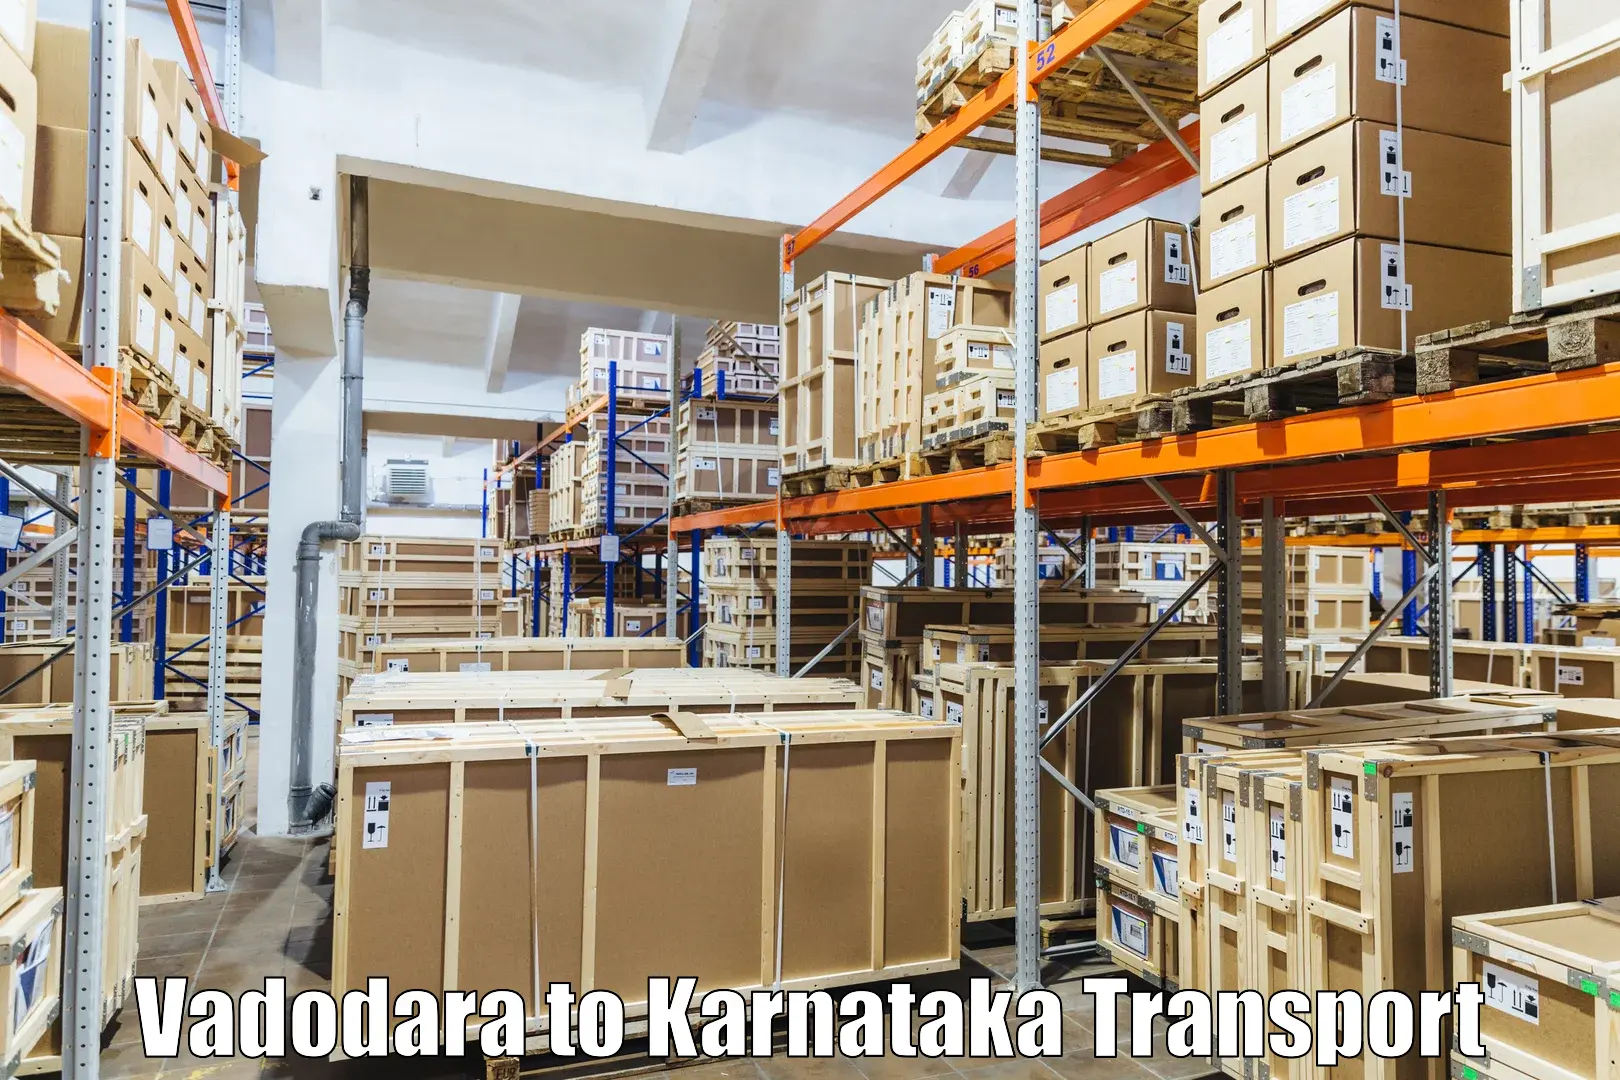 Online transport booking in Vadodara to Karnataka